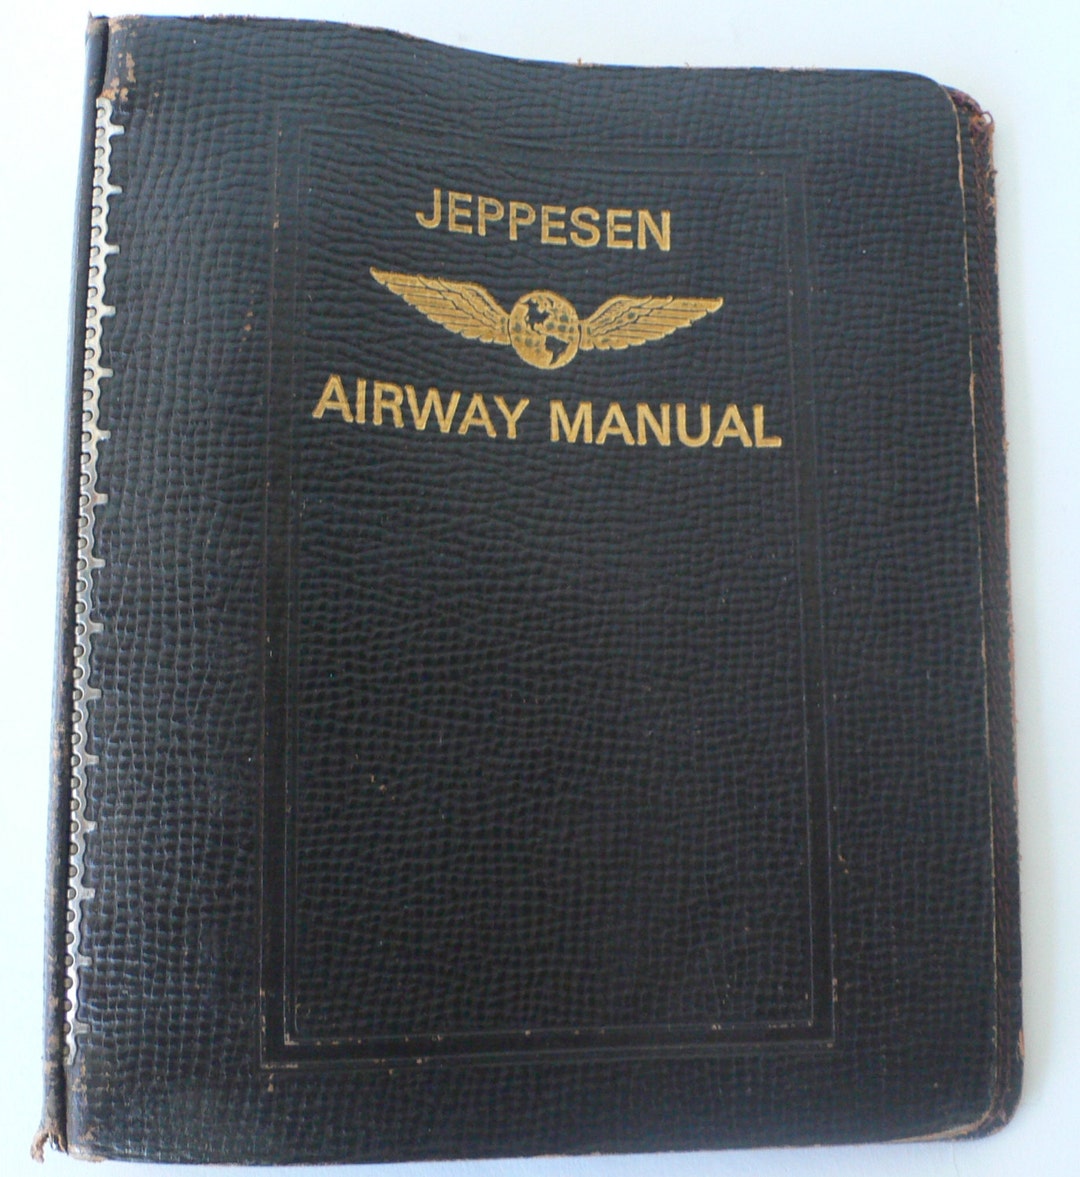 Vintage Binder 7 Ring Notebook Jeppesen Airway Manual Brown - Etsy